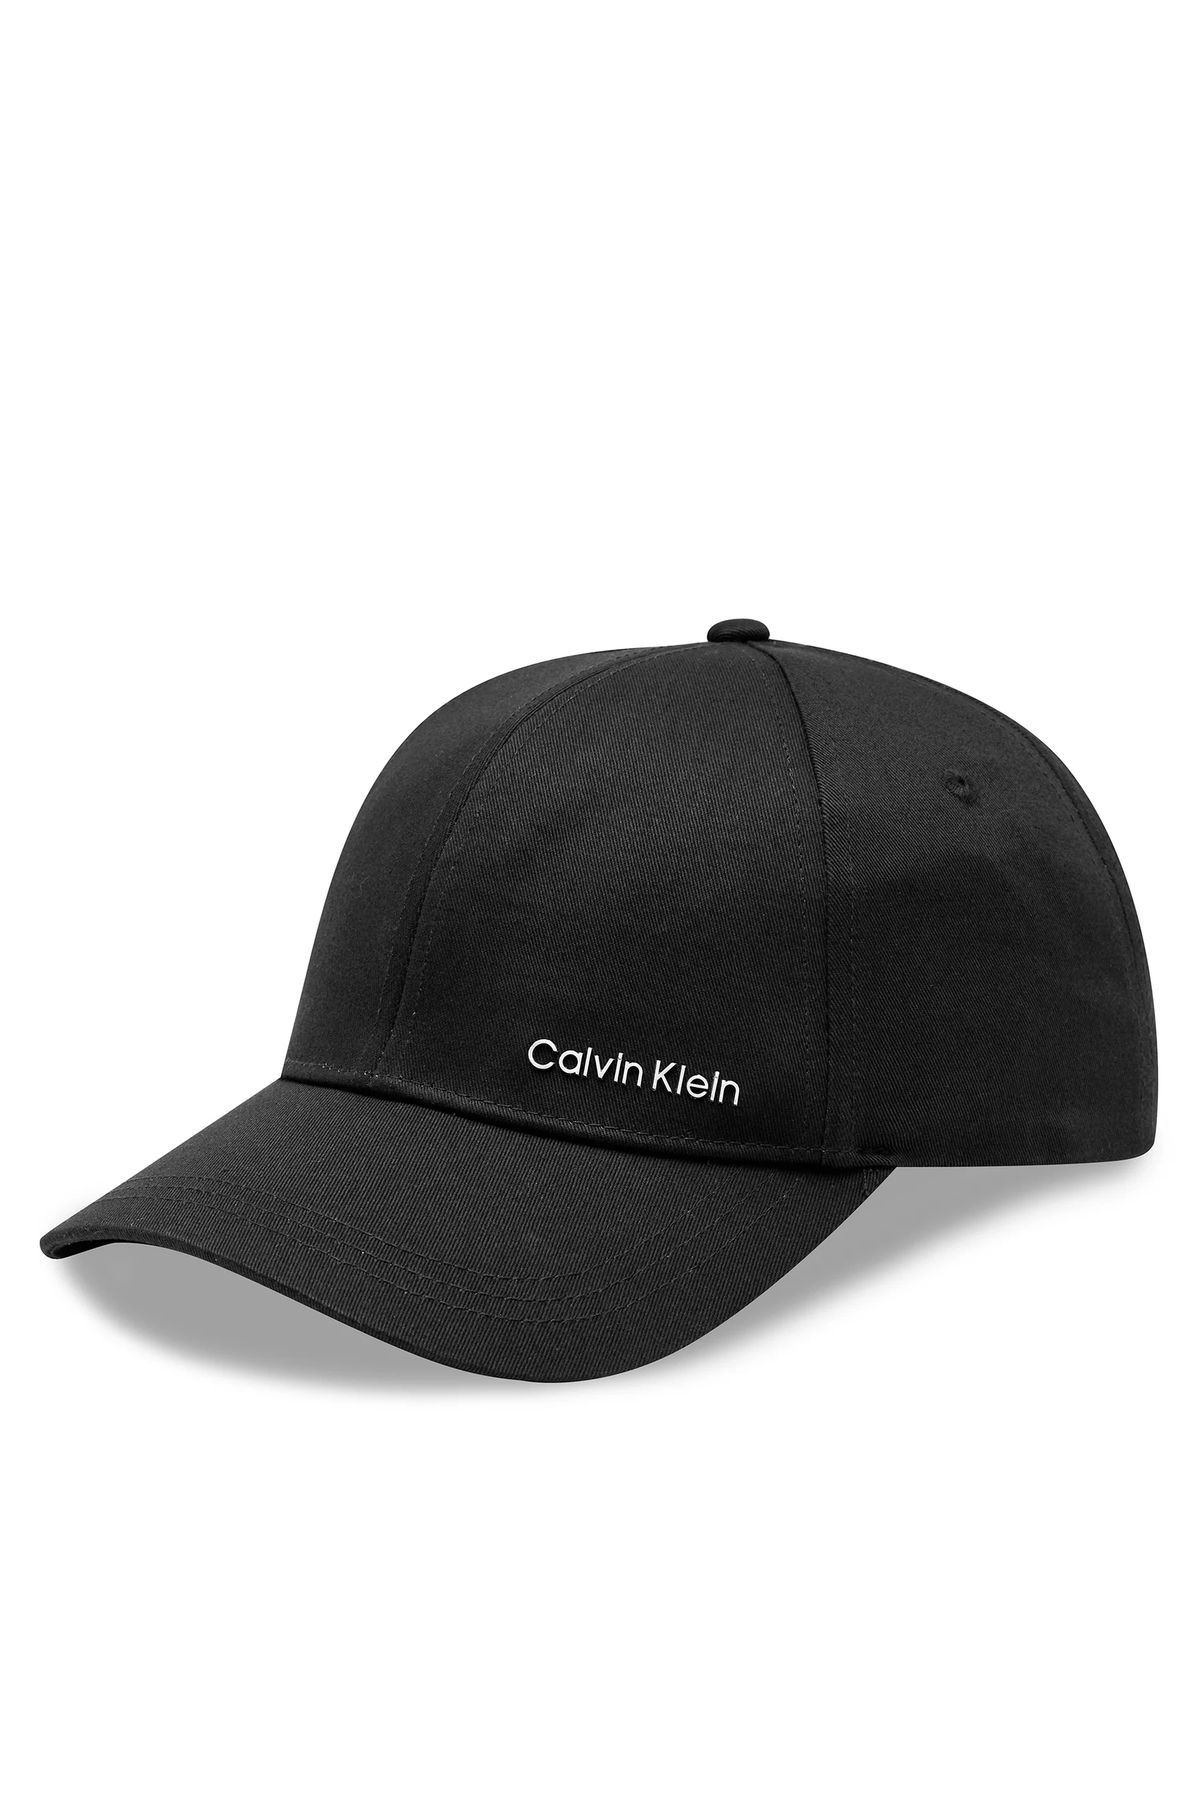 Calvin Klein کلاه